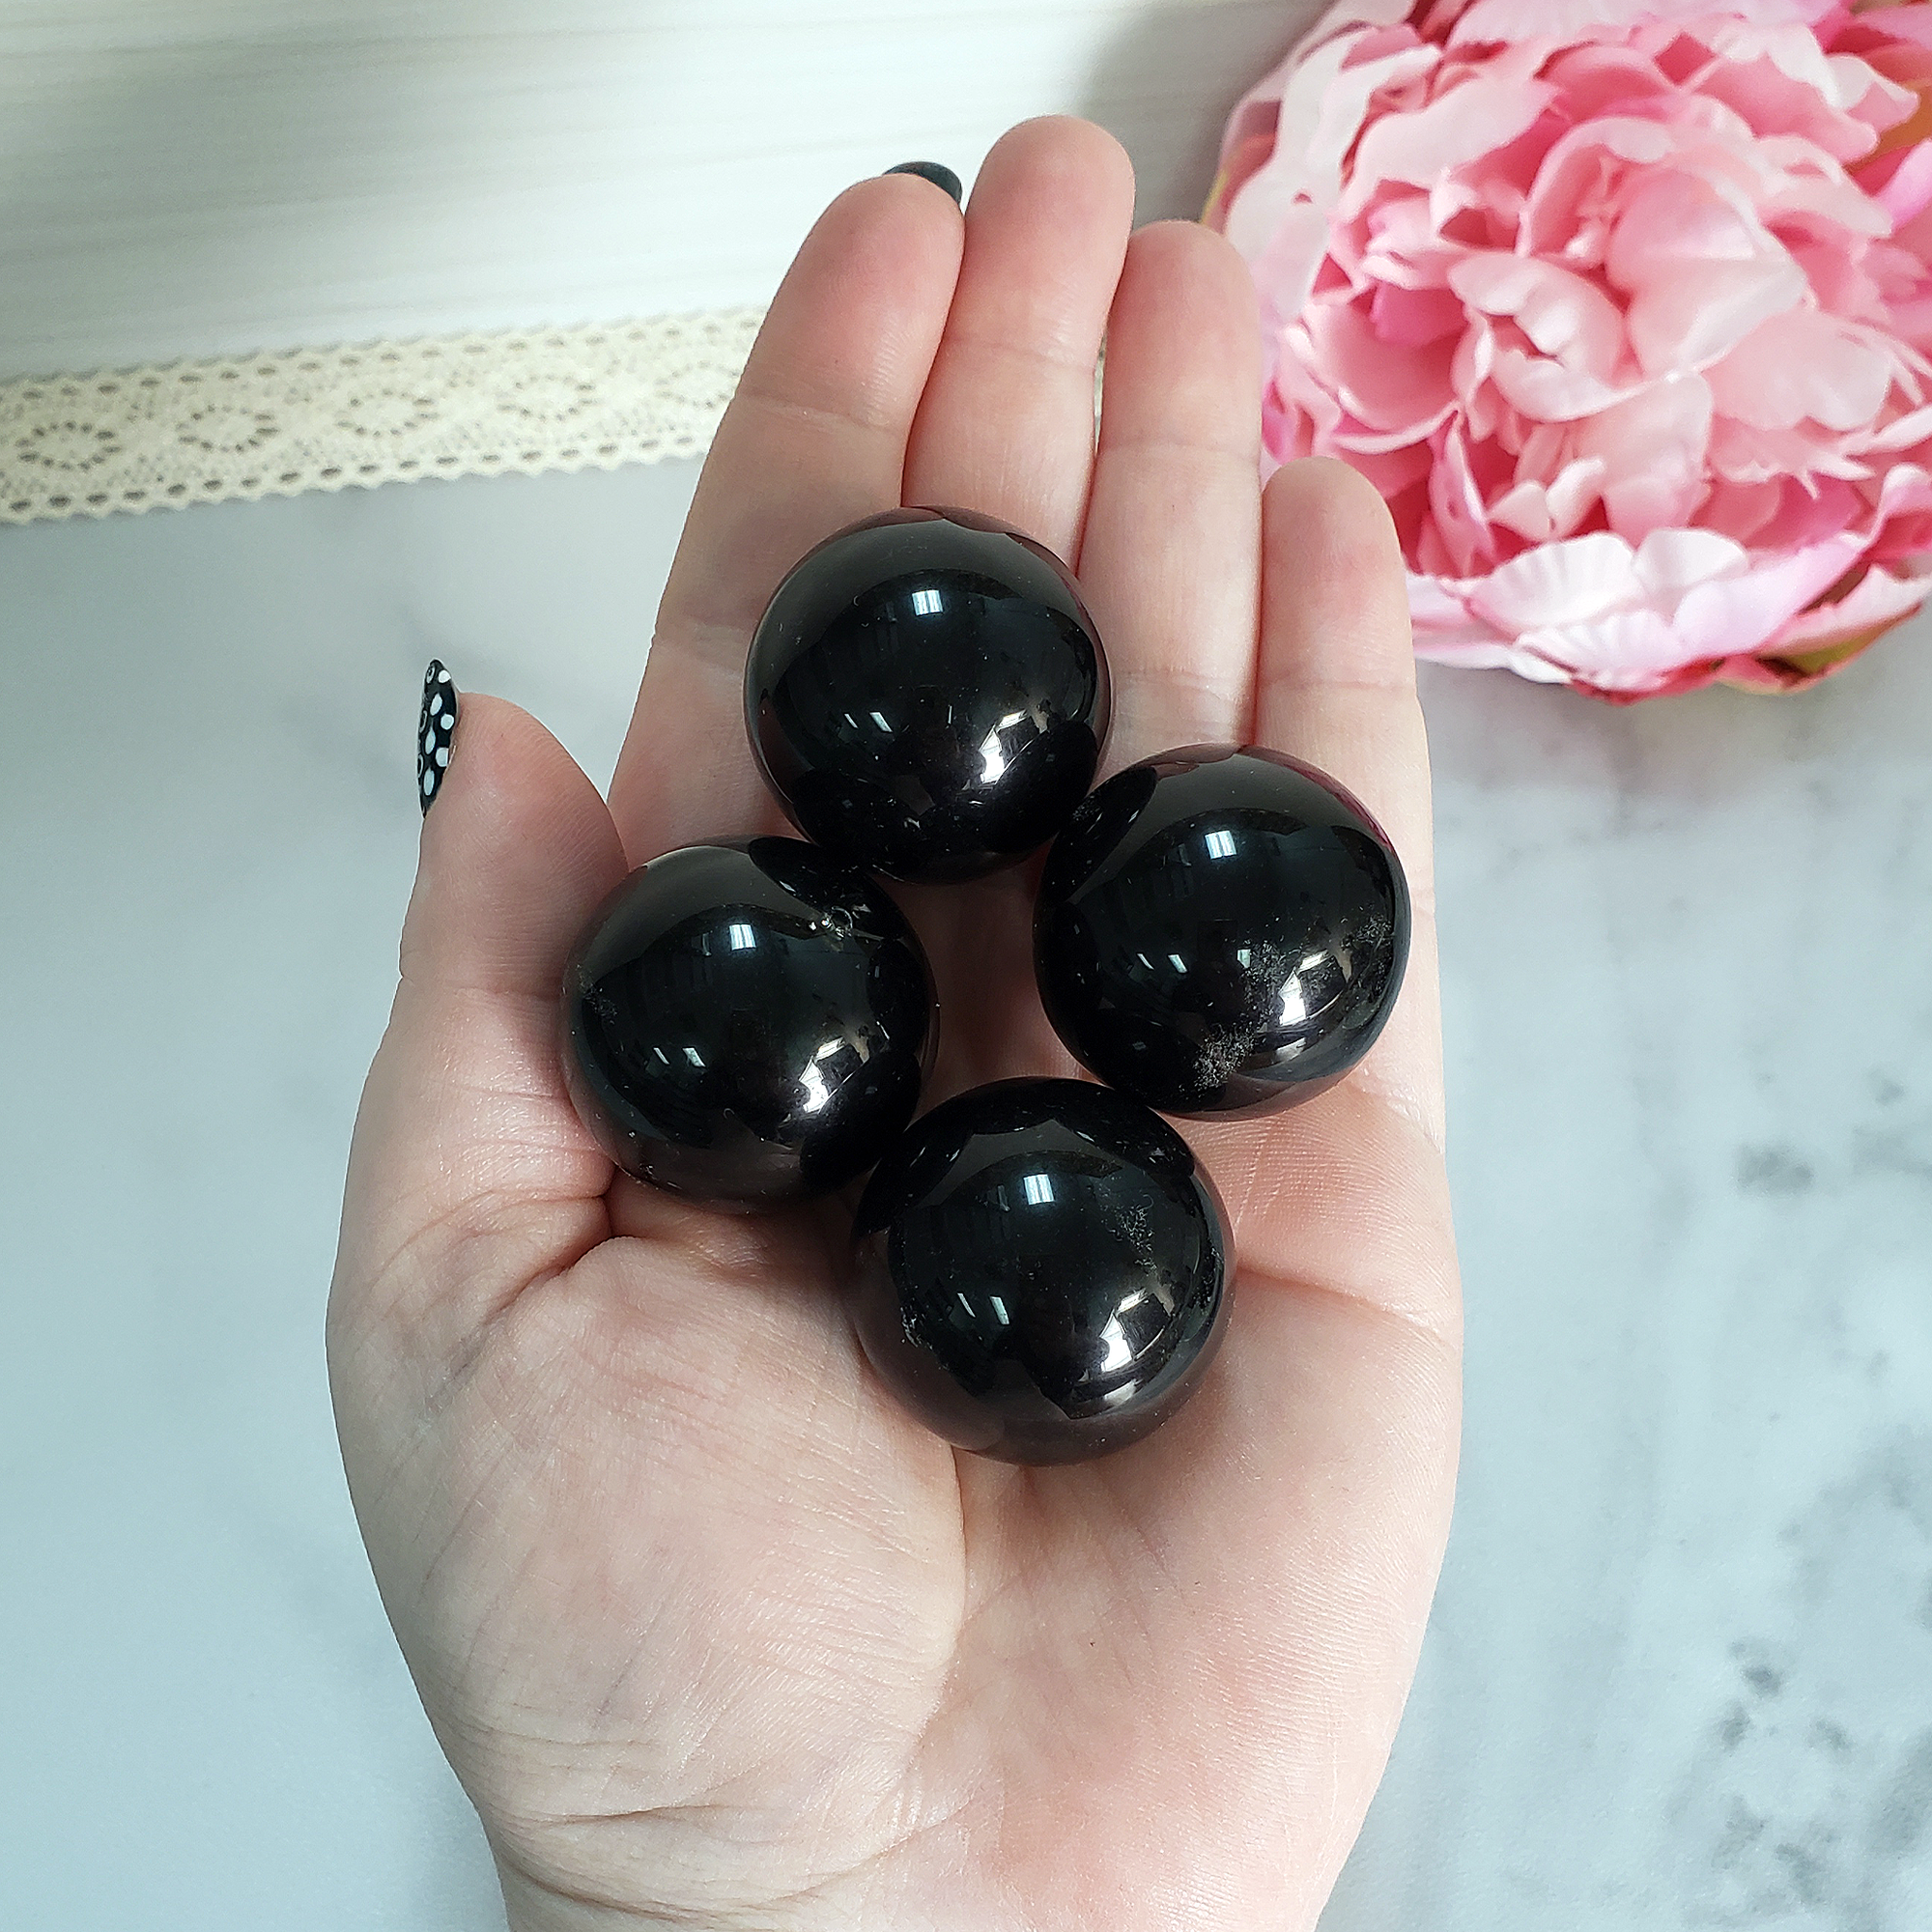 Black Obsidian Natural Crystal Sphere Gemstone Orb Marble - One 30mm Sphere - Group of Black Obsidian Orbs in Hand